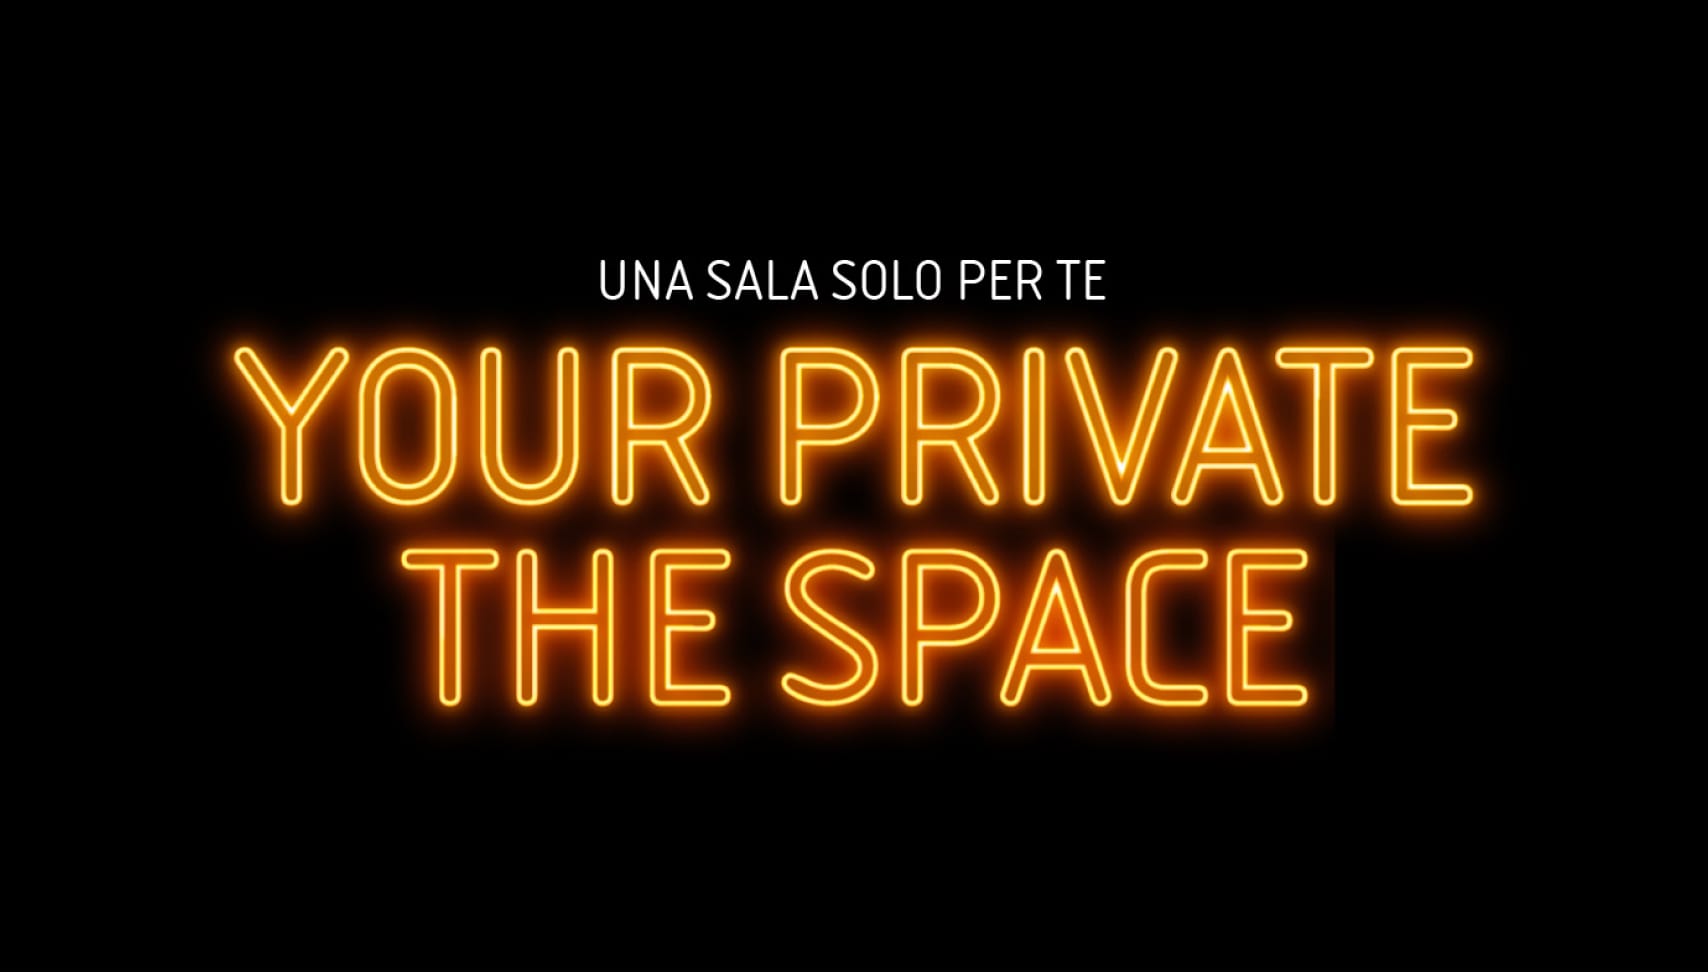 The Space Cinema comunicazione online web